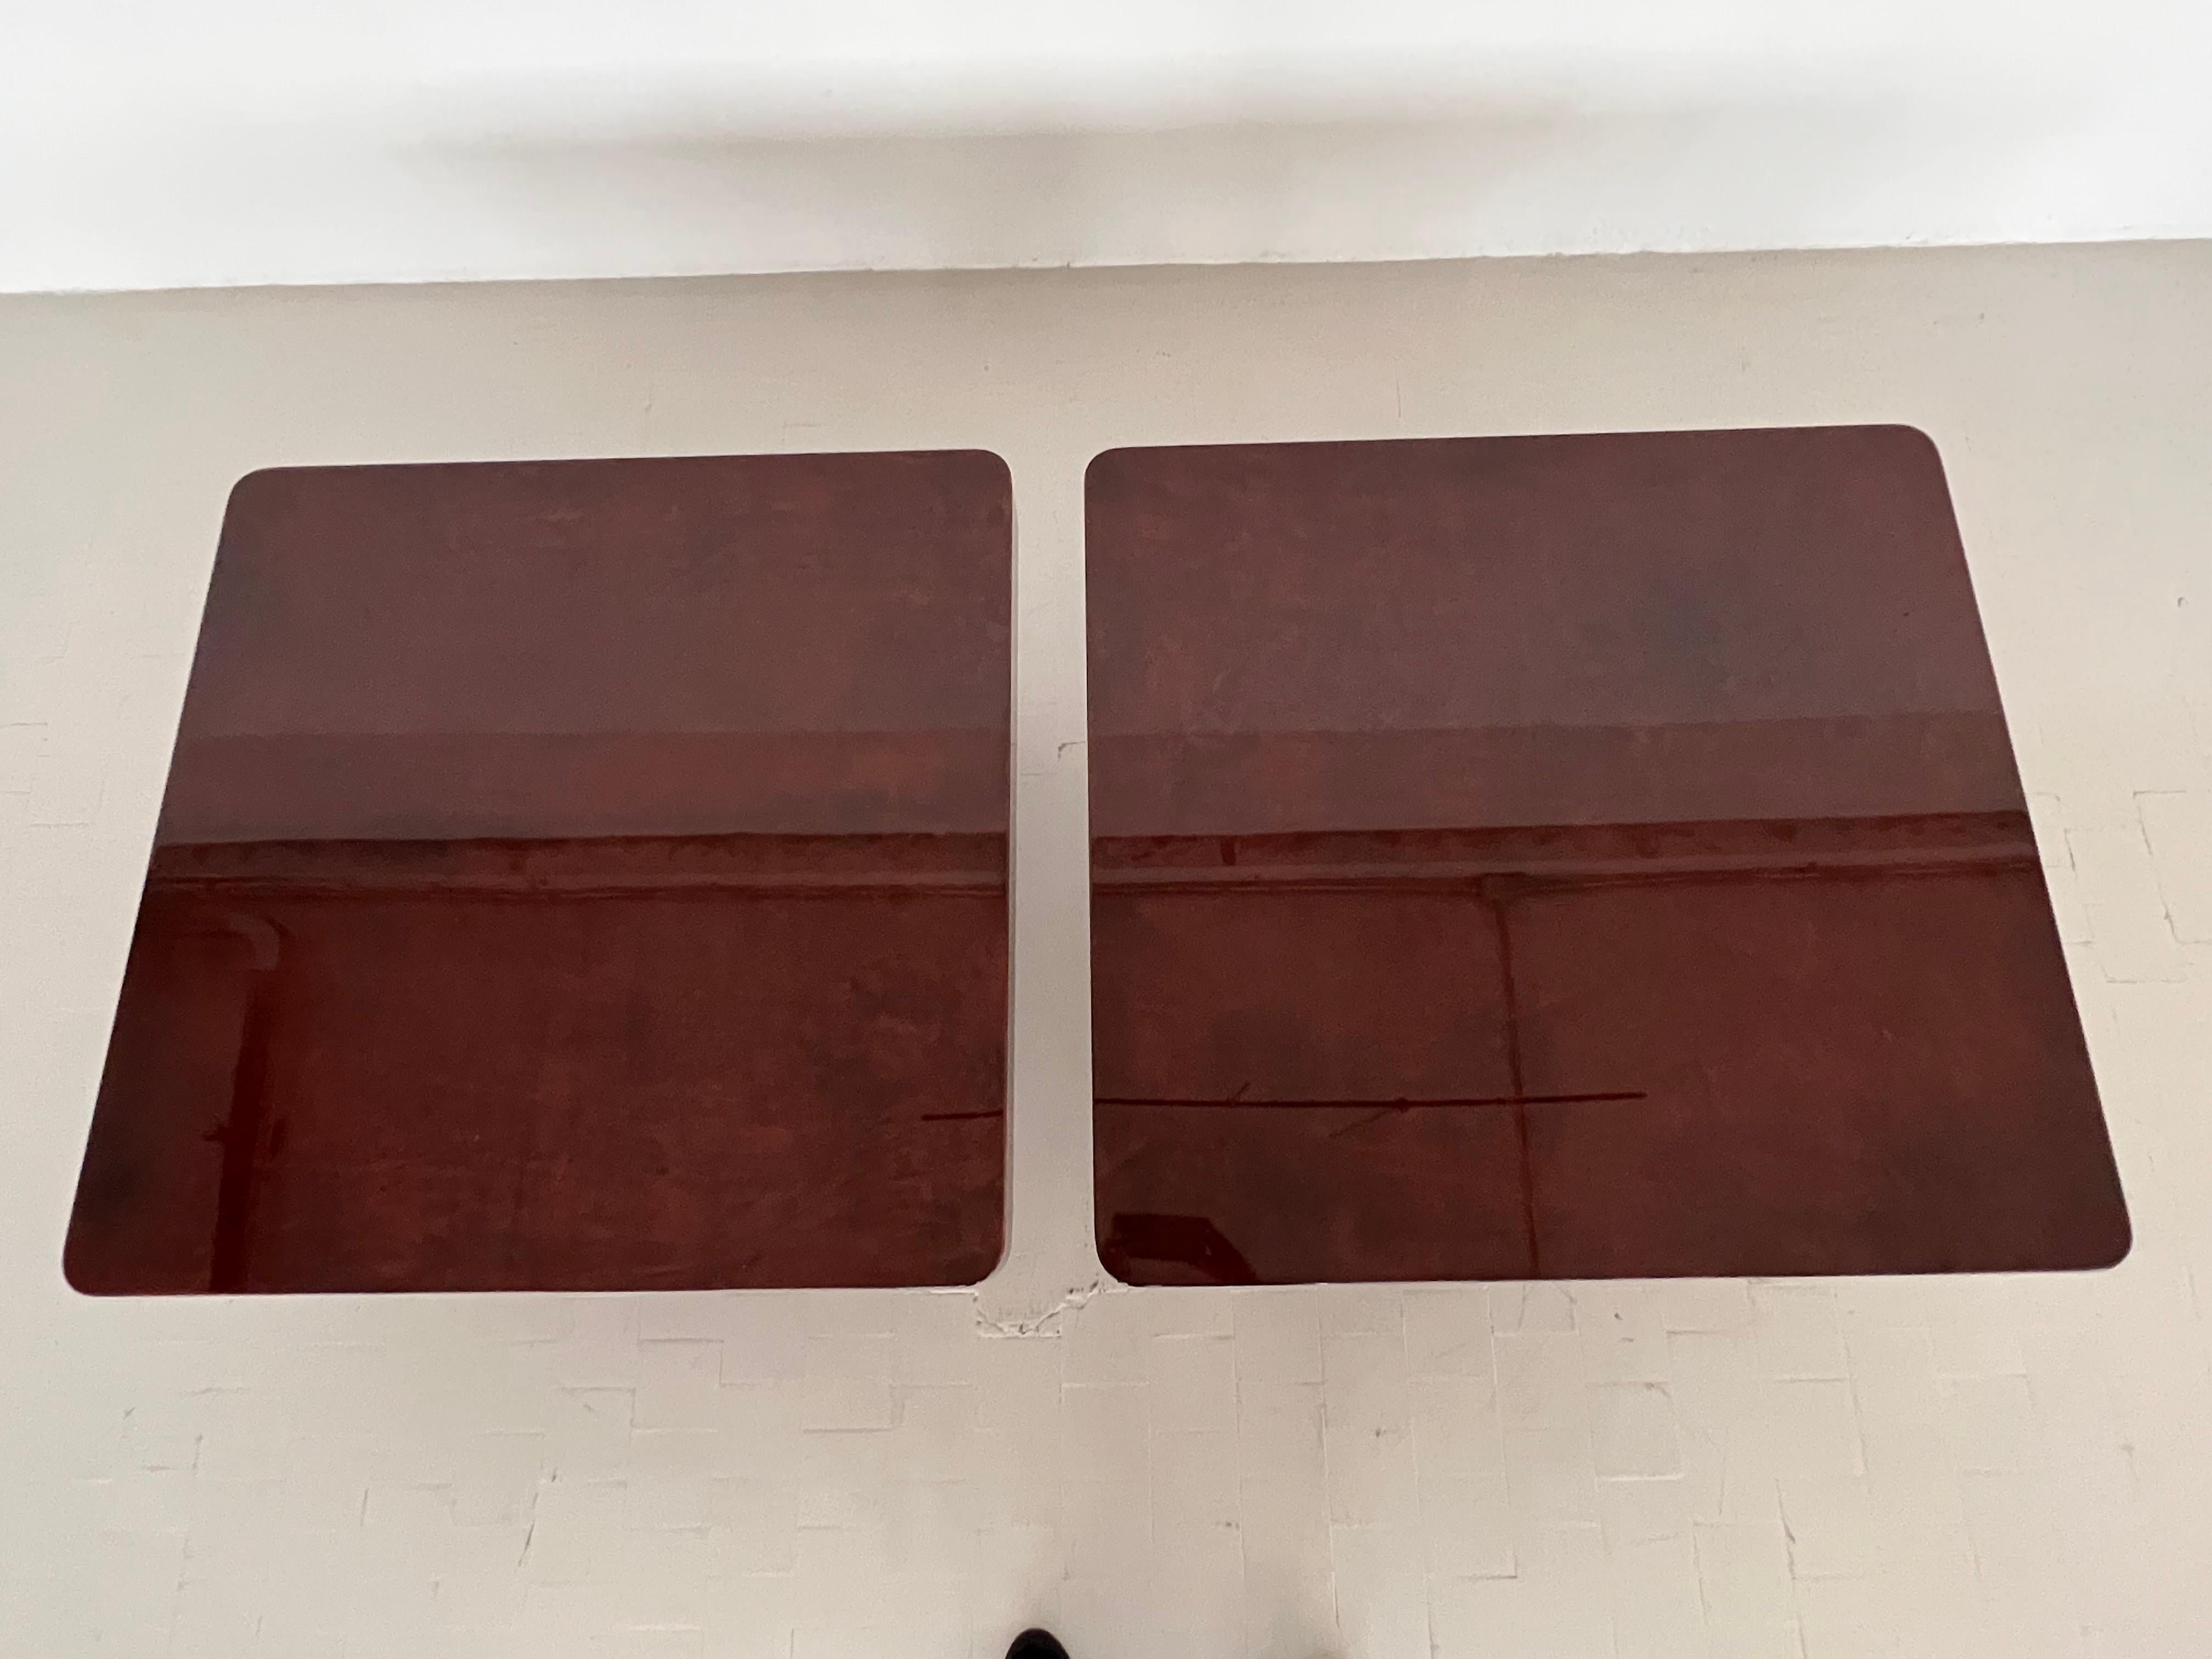 Exceptionnelle et magnifique paire de tables basses conçue par Aldo Tura au cours des années 1970.
Les tables ont été recouvertes de papier parchemin de couleur rouge-brun-mahogany et finies avec une laque forte et brillante.  De belles pièces